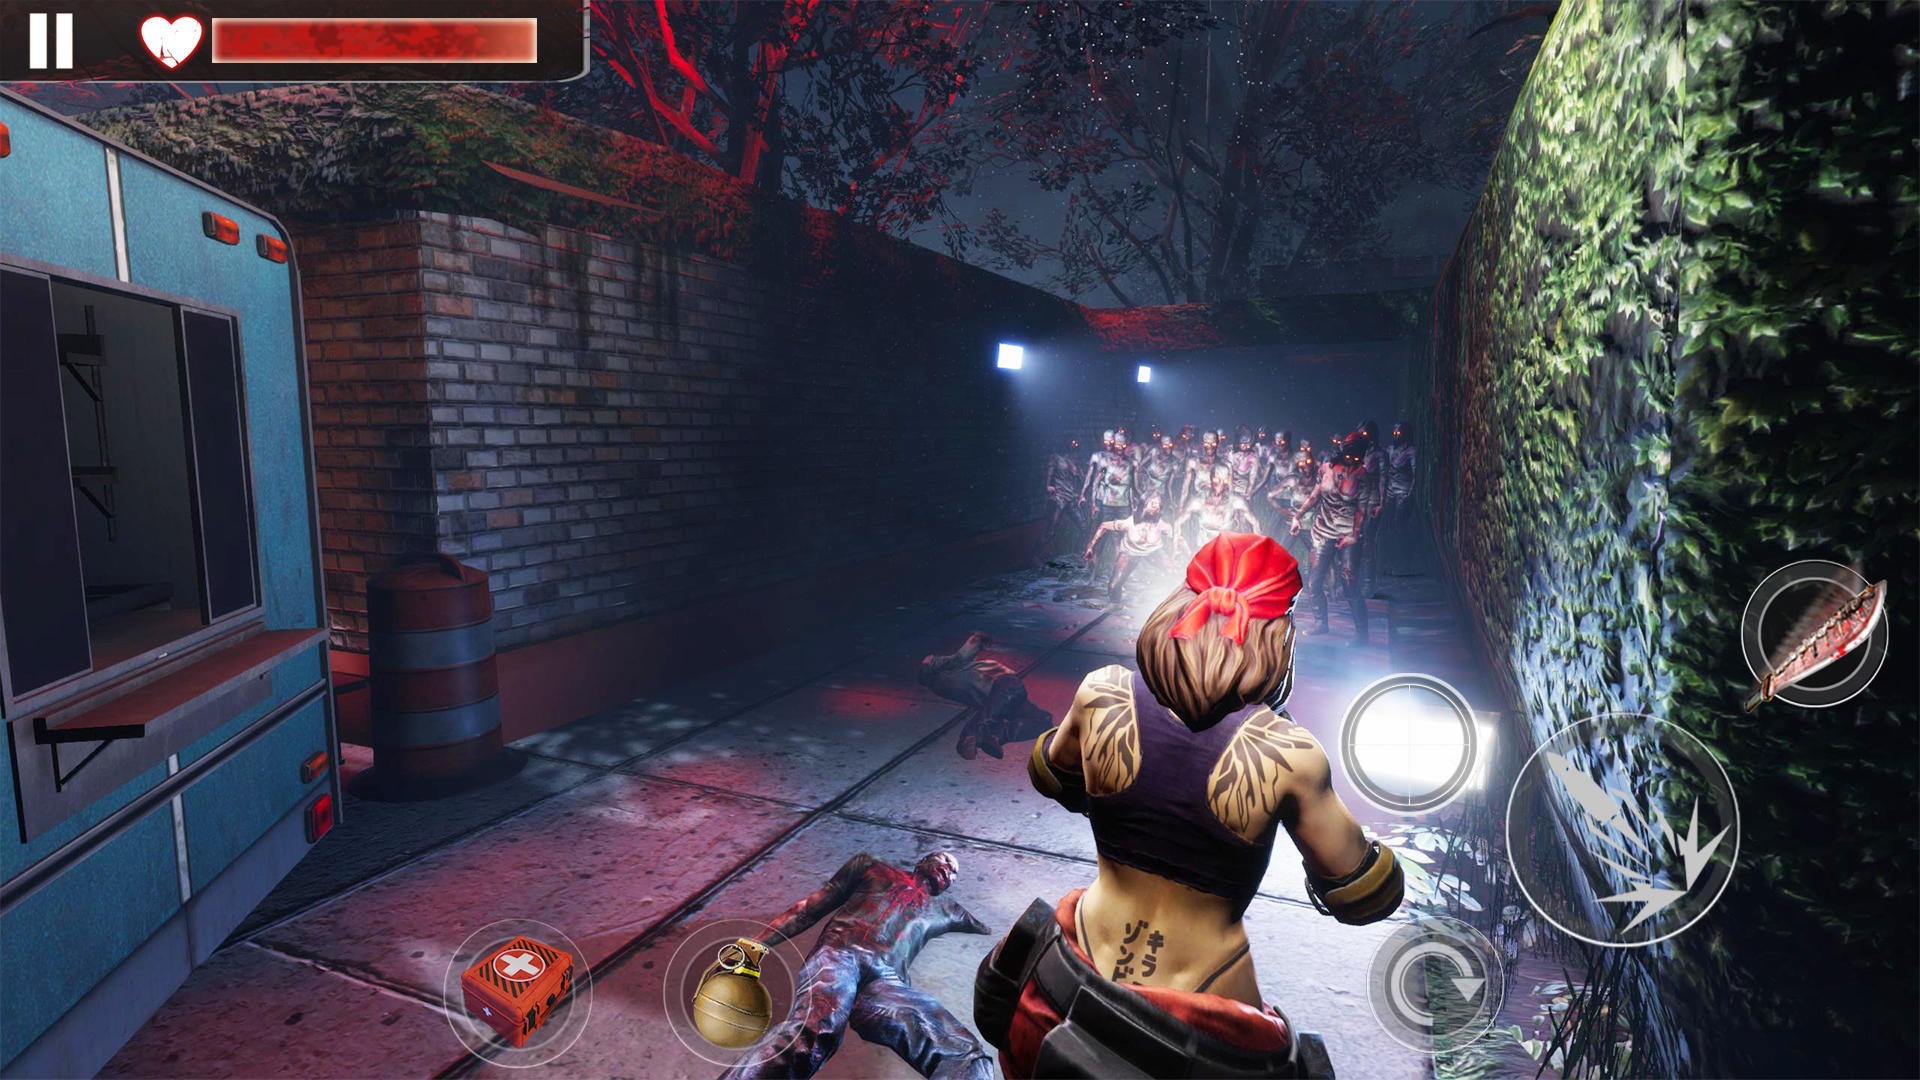 Screenshot of Zombie Shooter 3D